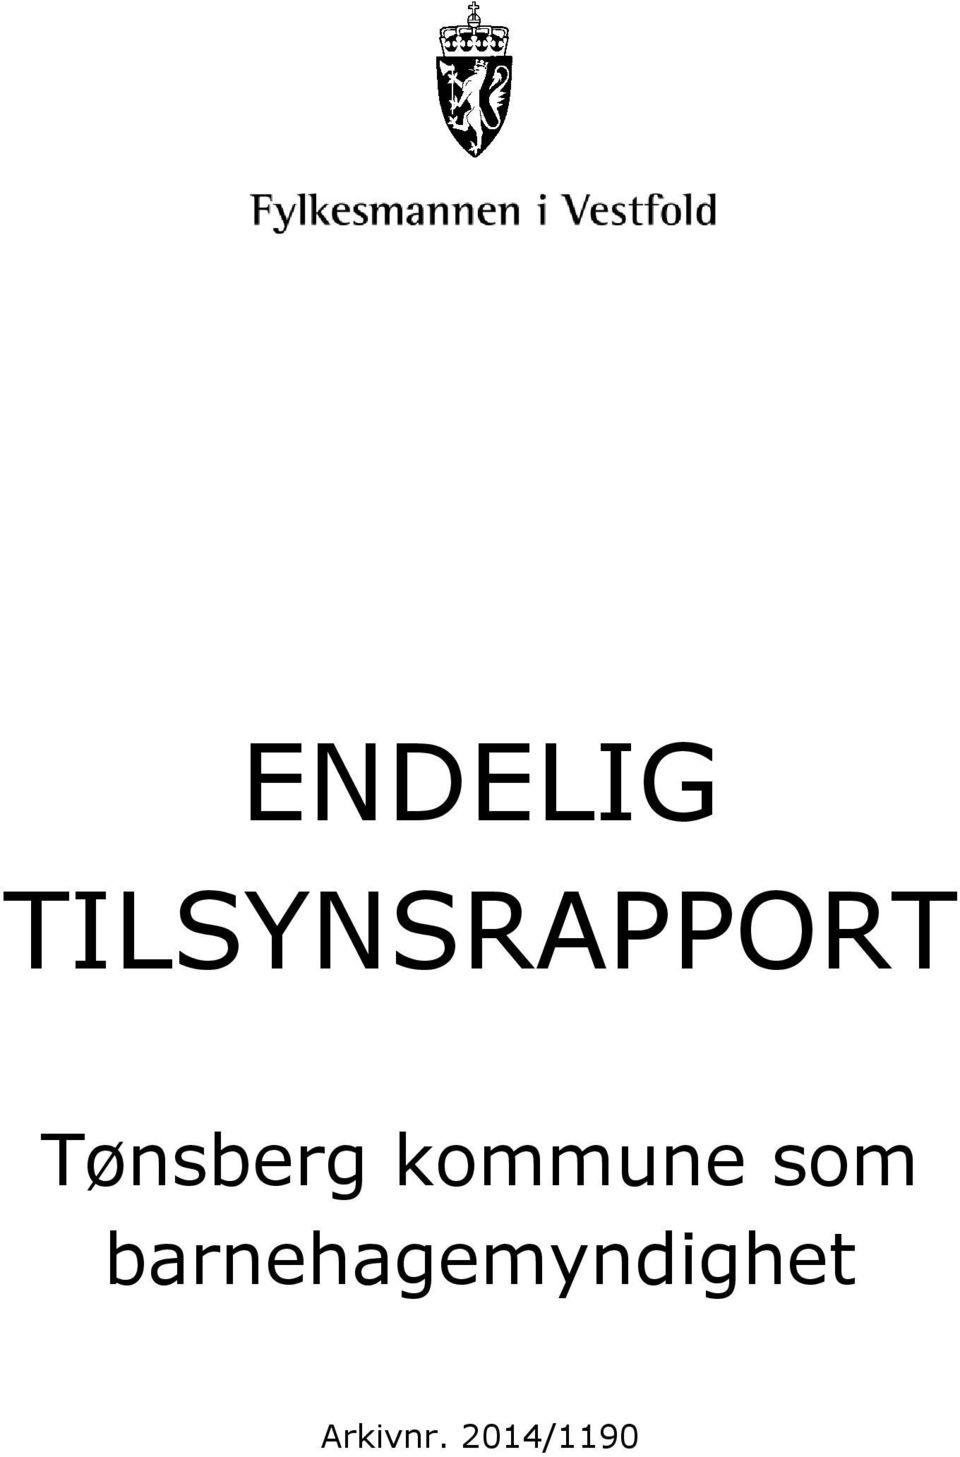 Tønsberg kommune som